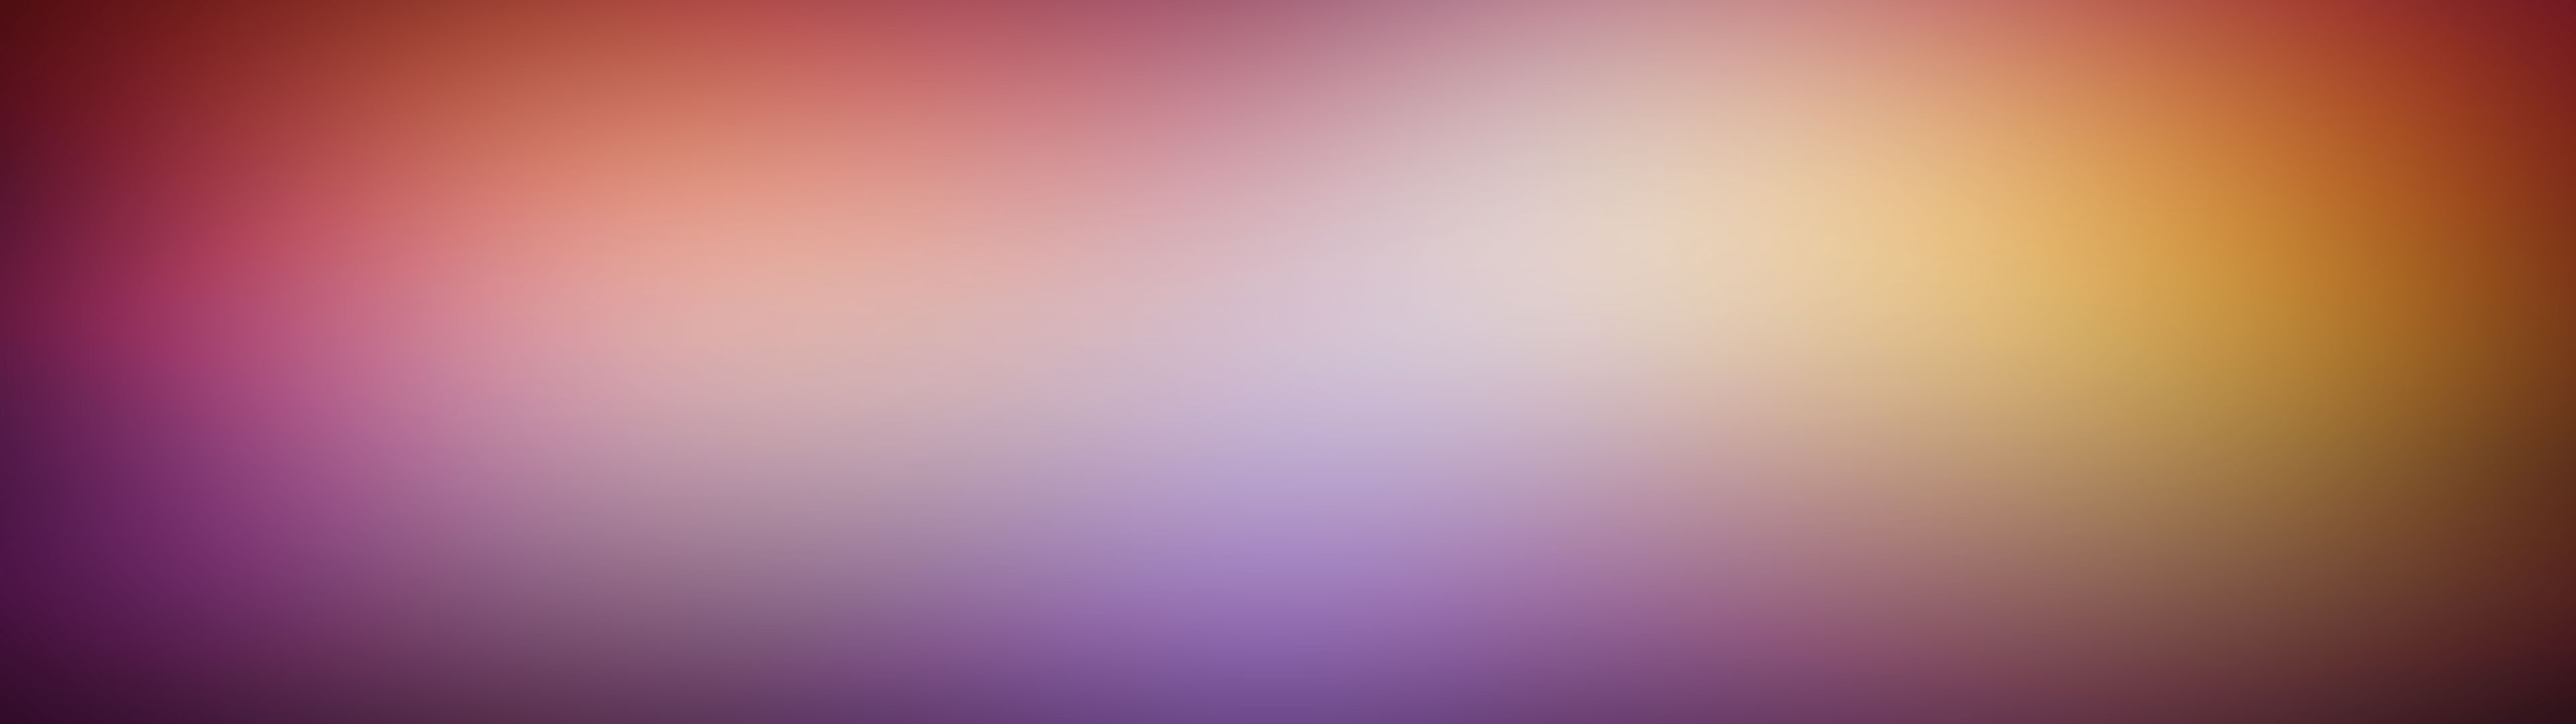 Blur Gradient - HD Wallpaper 